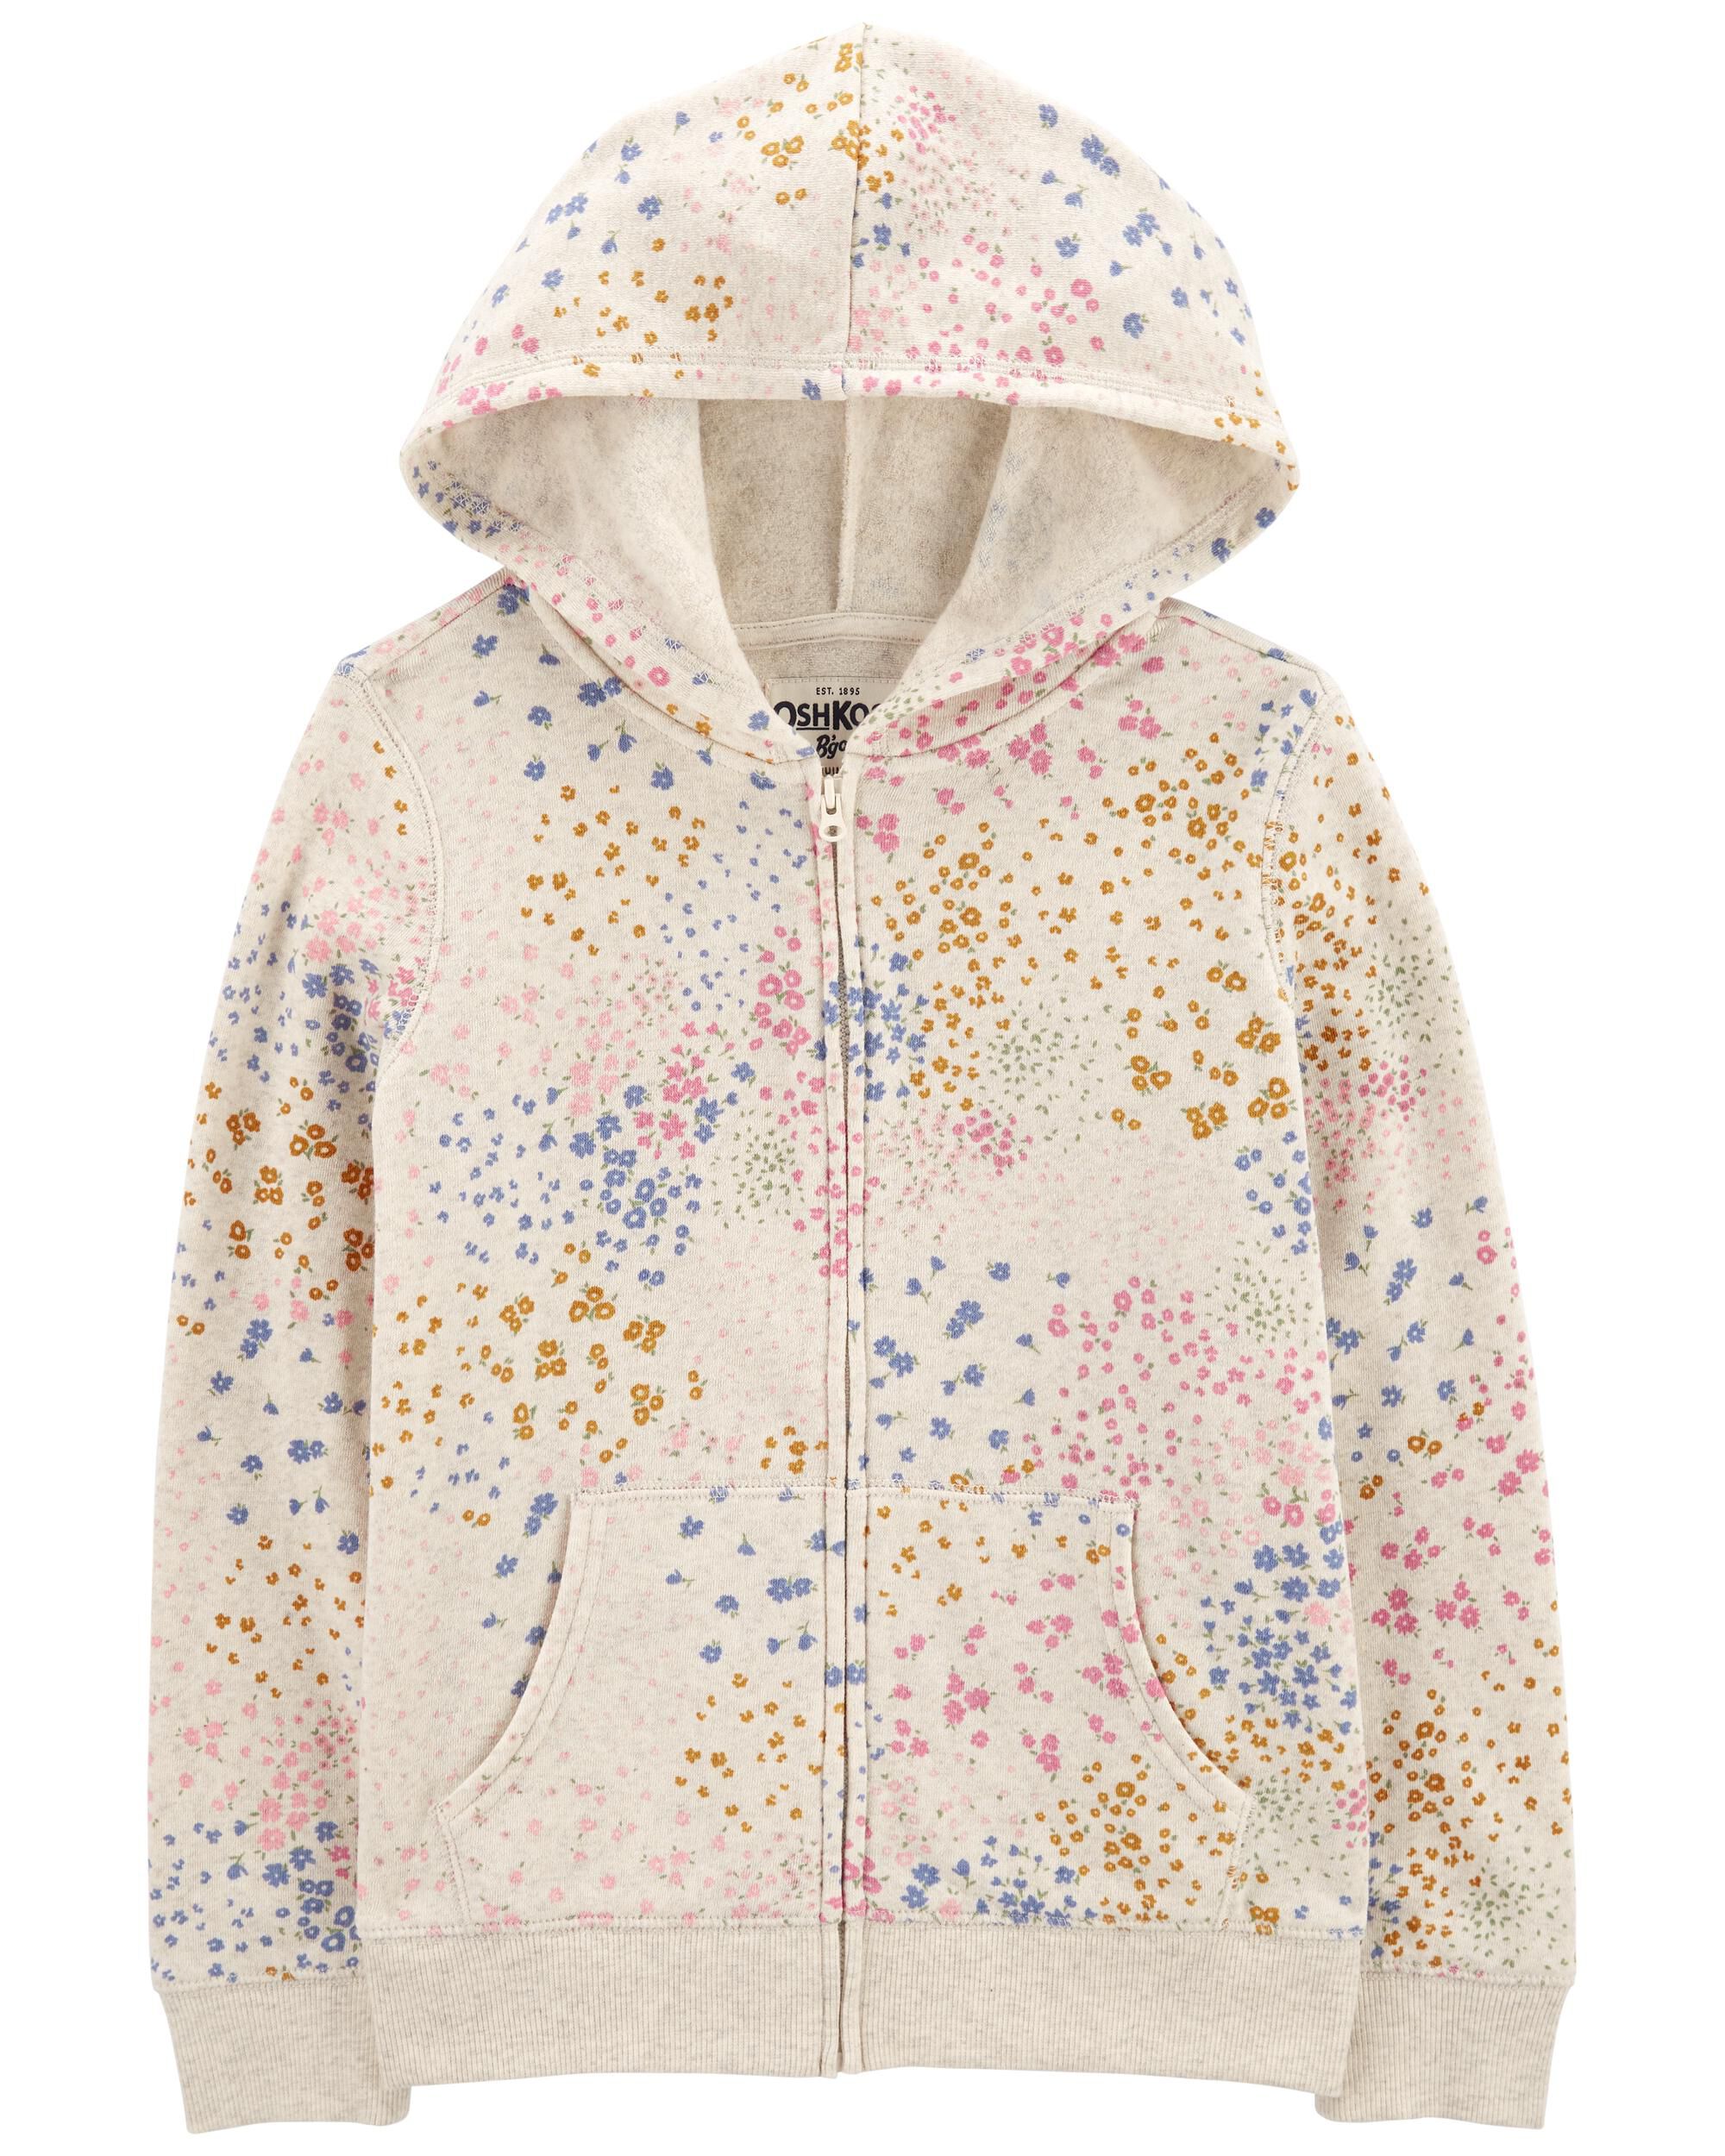 Carters Floral Print Fleece Zip Jacket